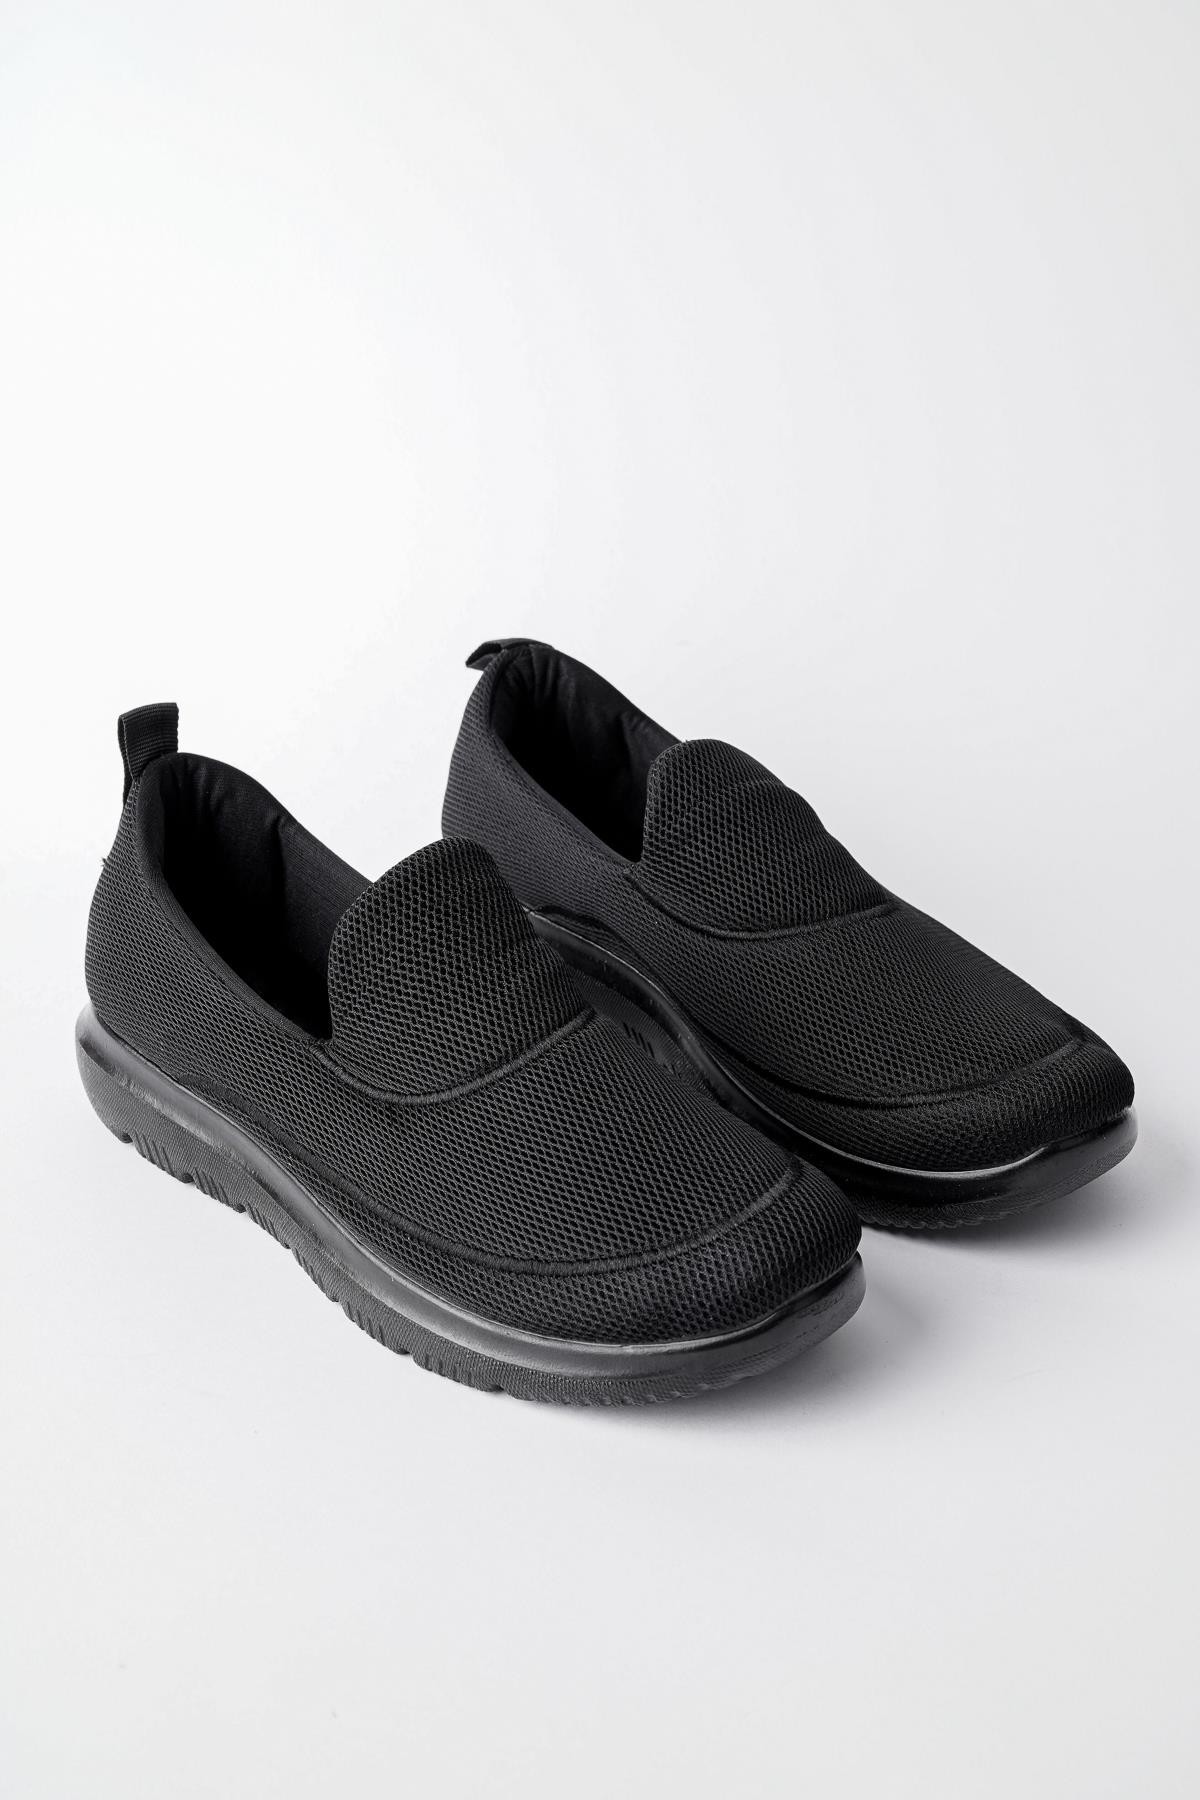 Muggo ZAC Garantili Erkek Ortopedik Bağcıksız Nefes Alabilen Hafif Yürüyüş Sneaker Spor Ayakkabı